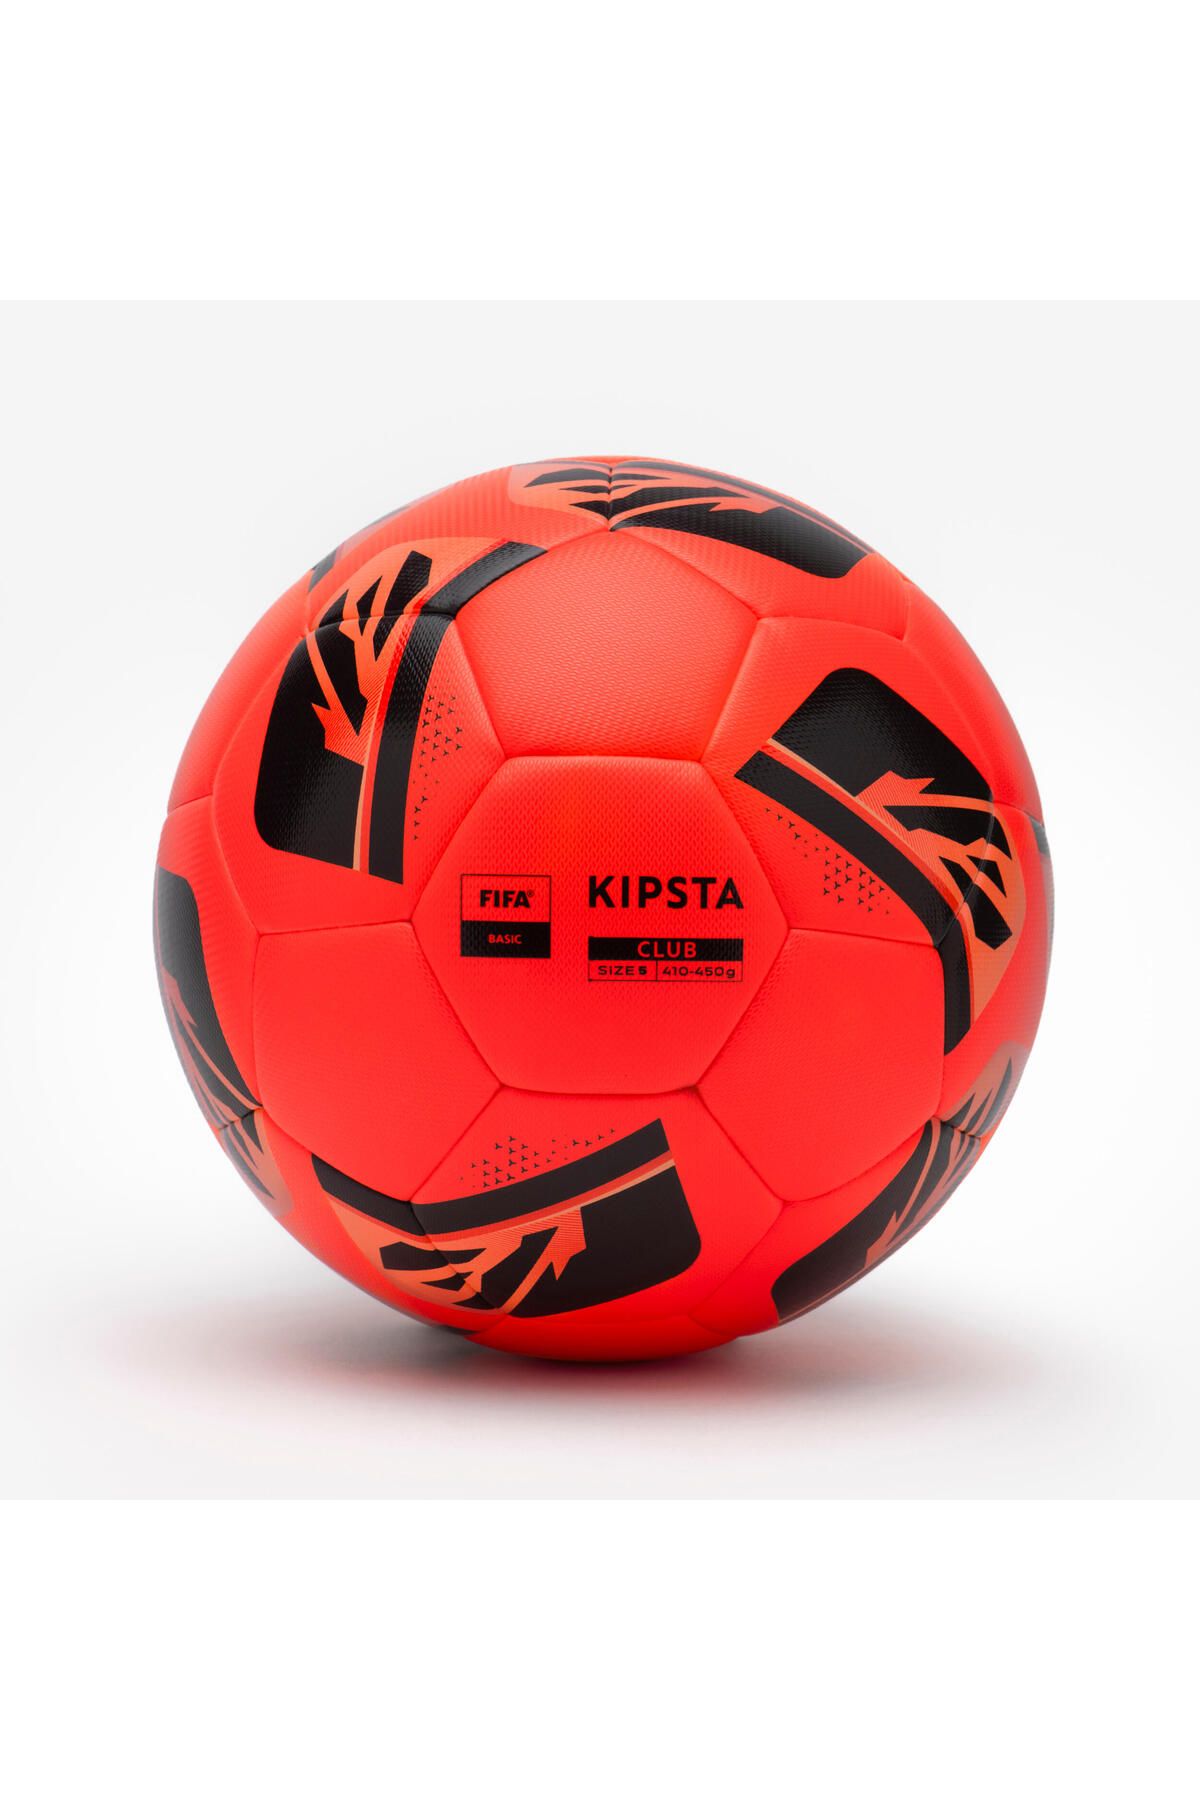 Decathlon KIPSTA Futbol Topu - 5 Numara -  Kırmızı - FIFA BASIC CLUB